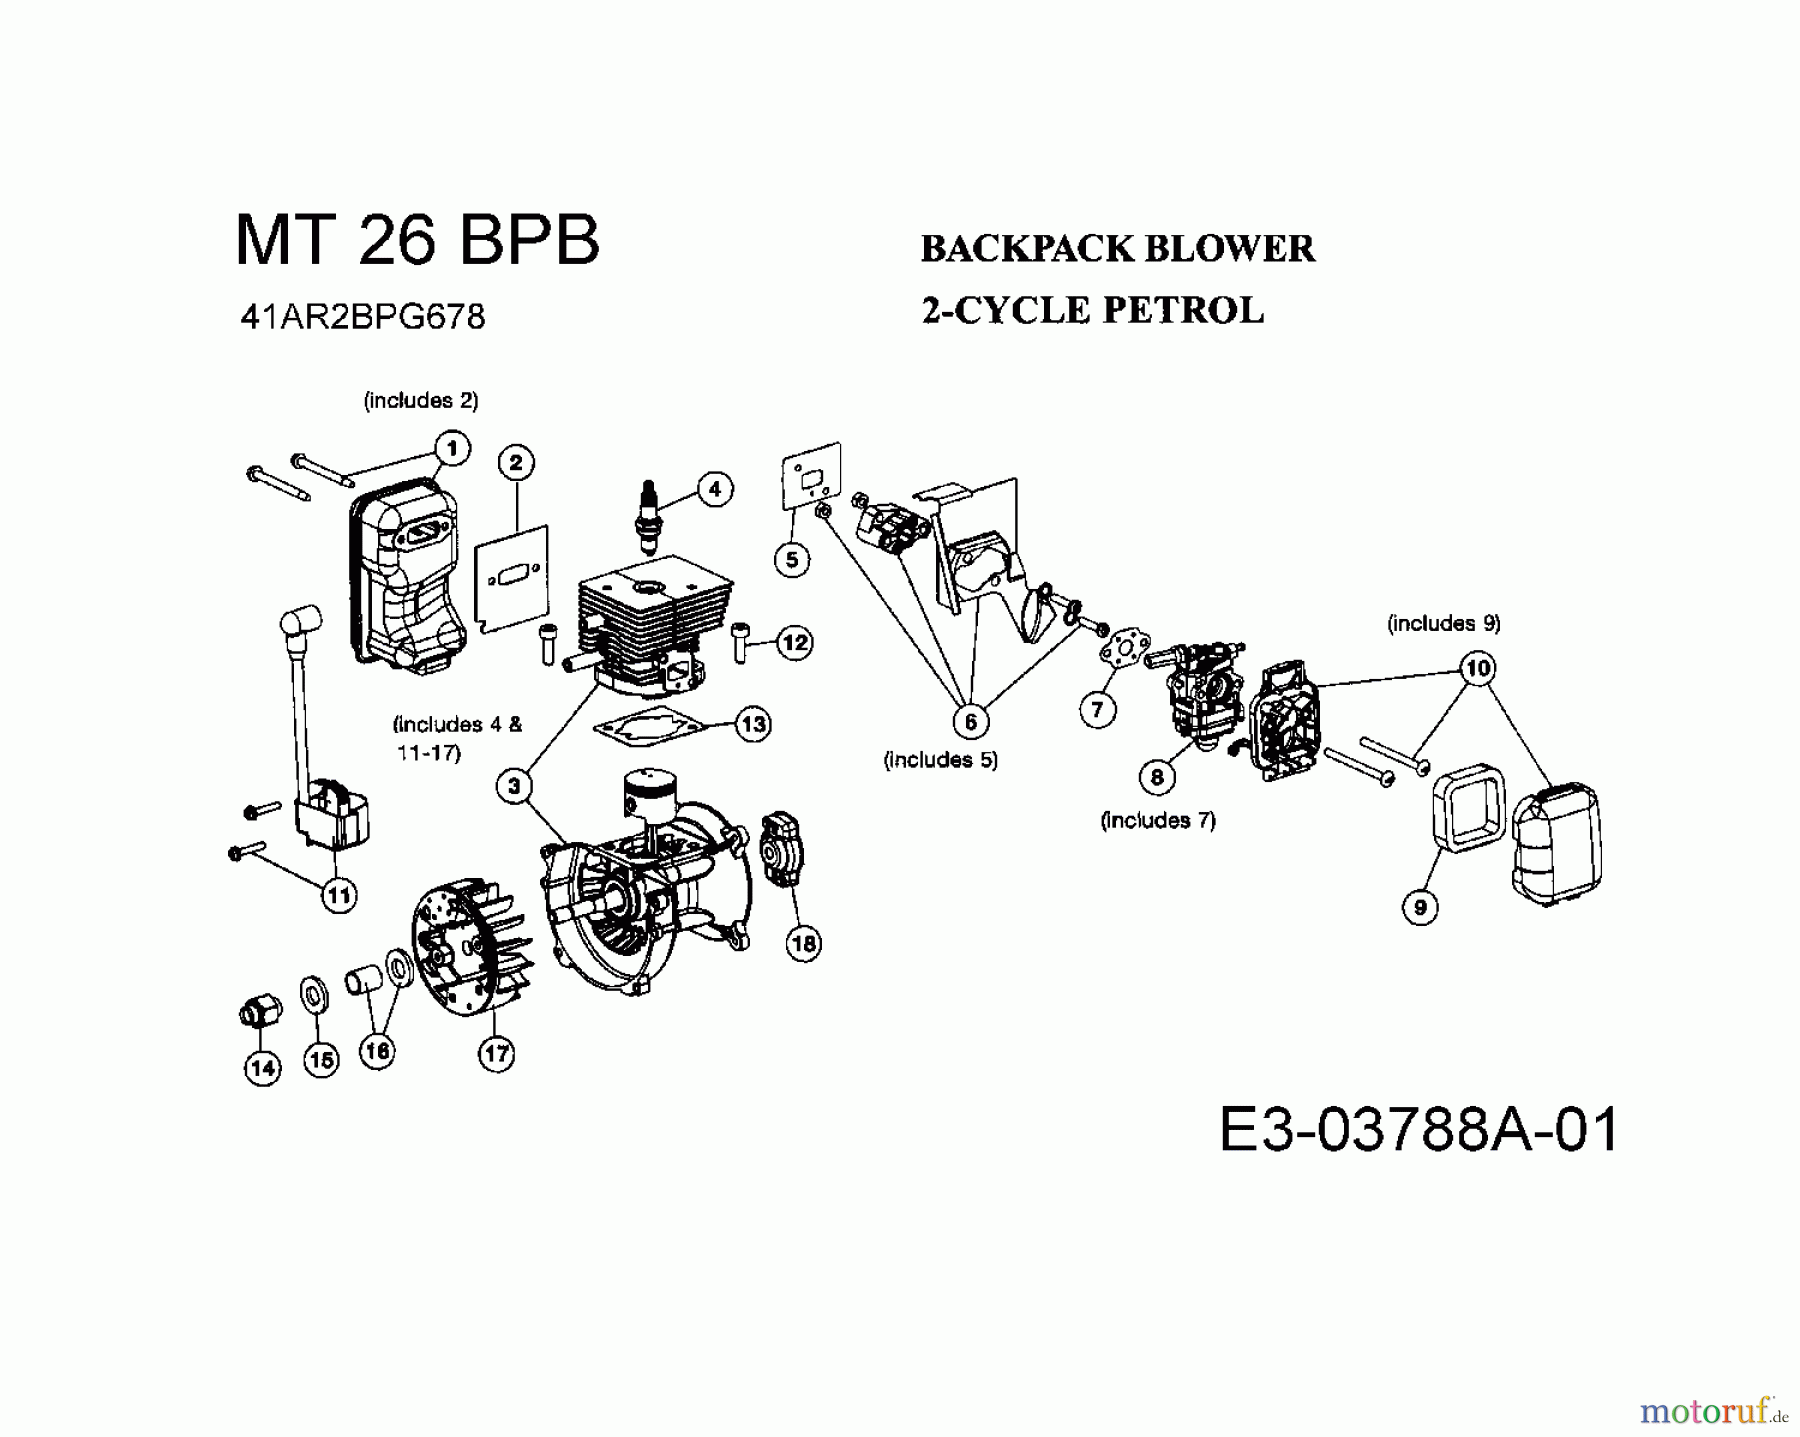  MTD Leaf blower, Blower vac MT 26 BPB 41AR2BPG678  (2008) Engine